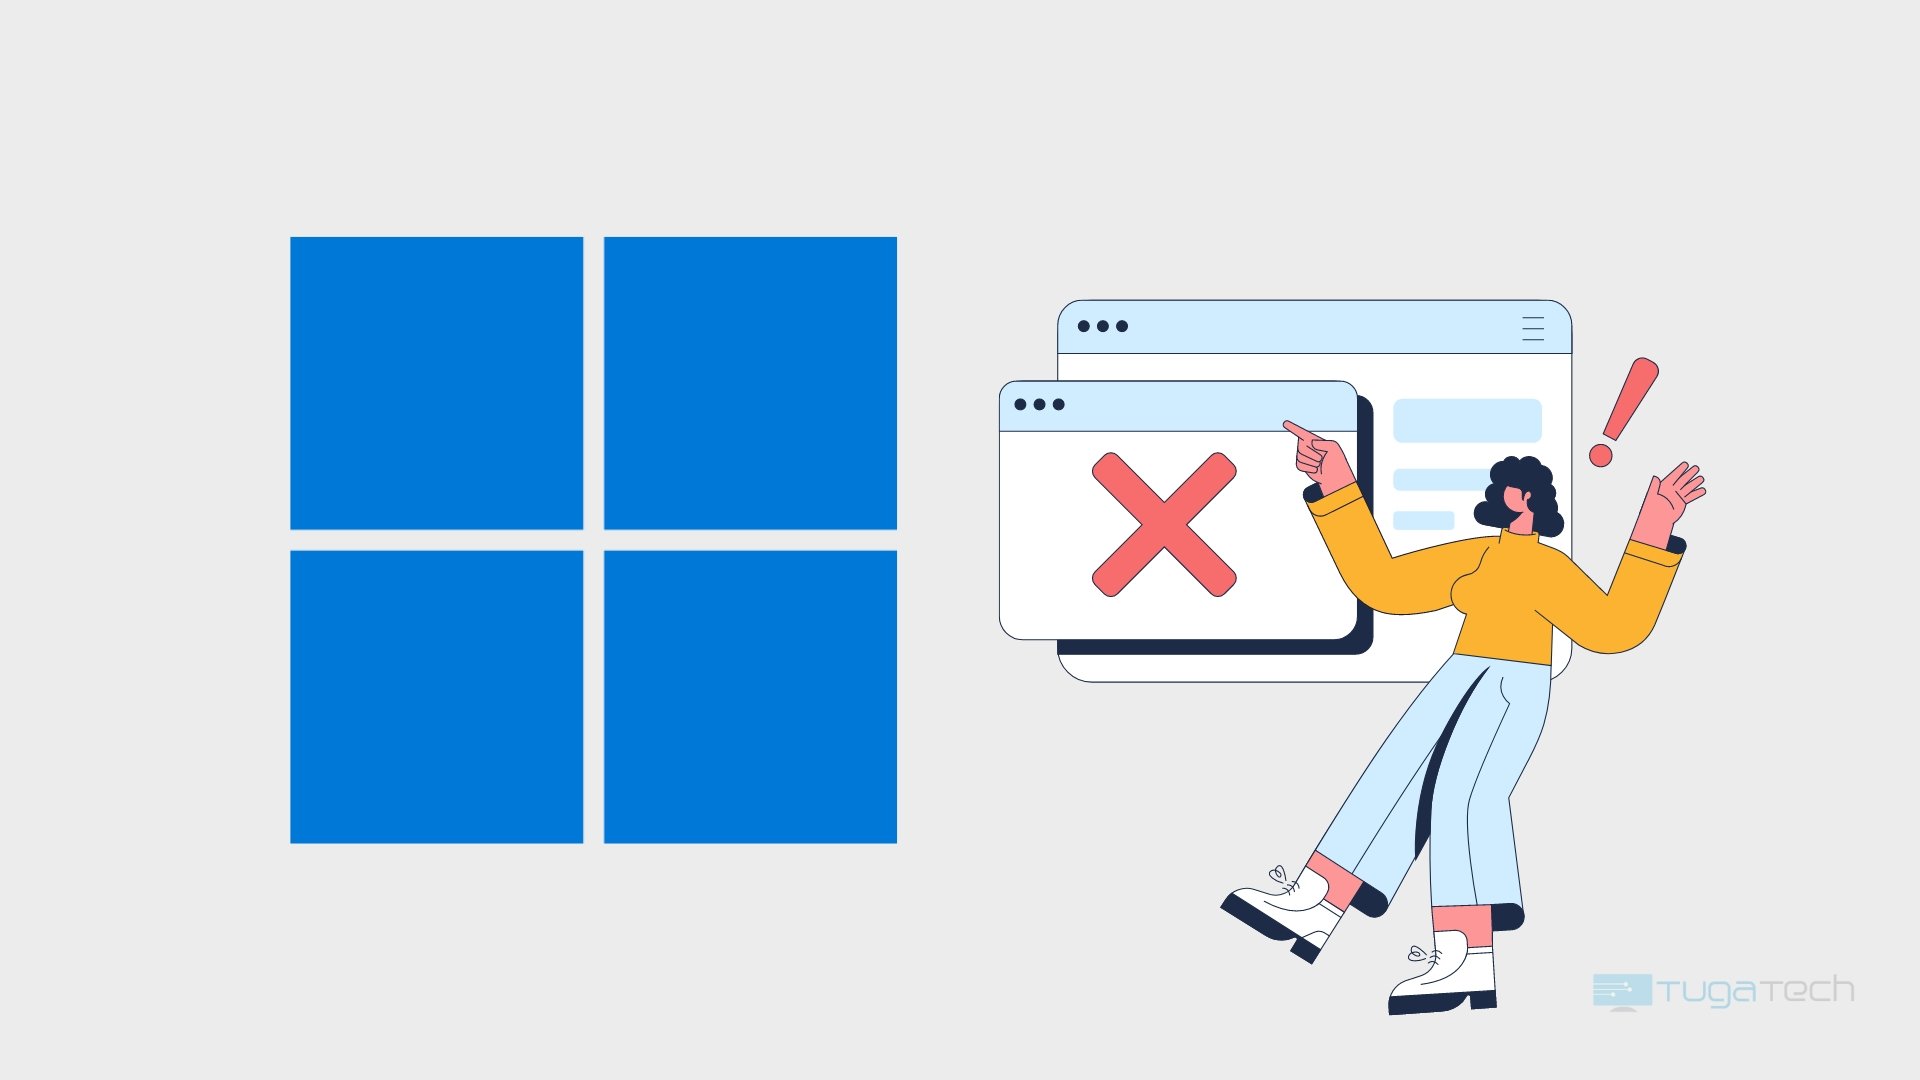 Windows com utilizador e problemas